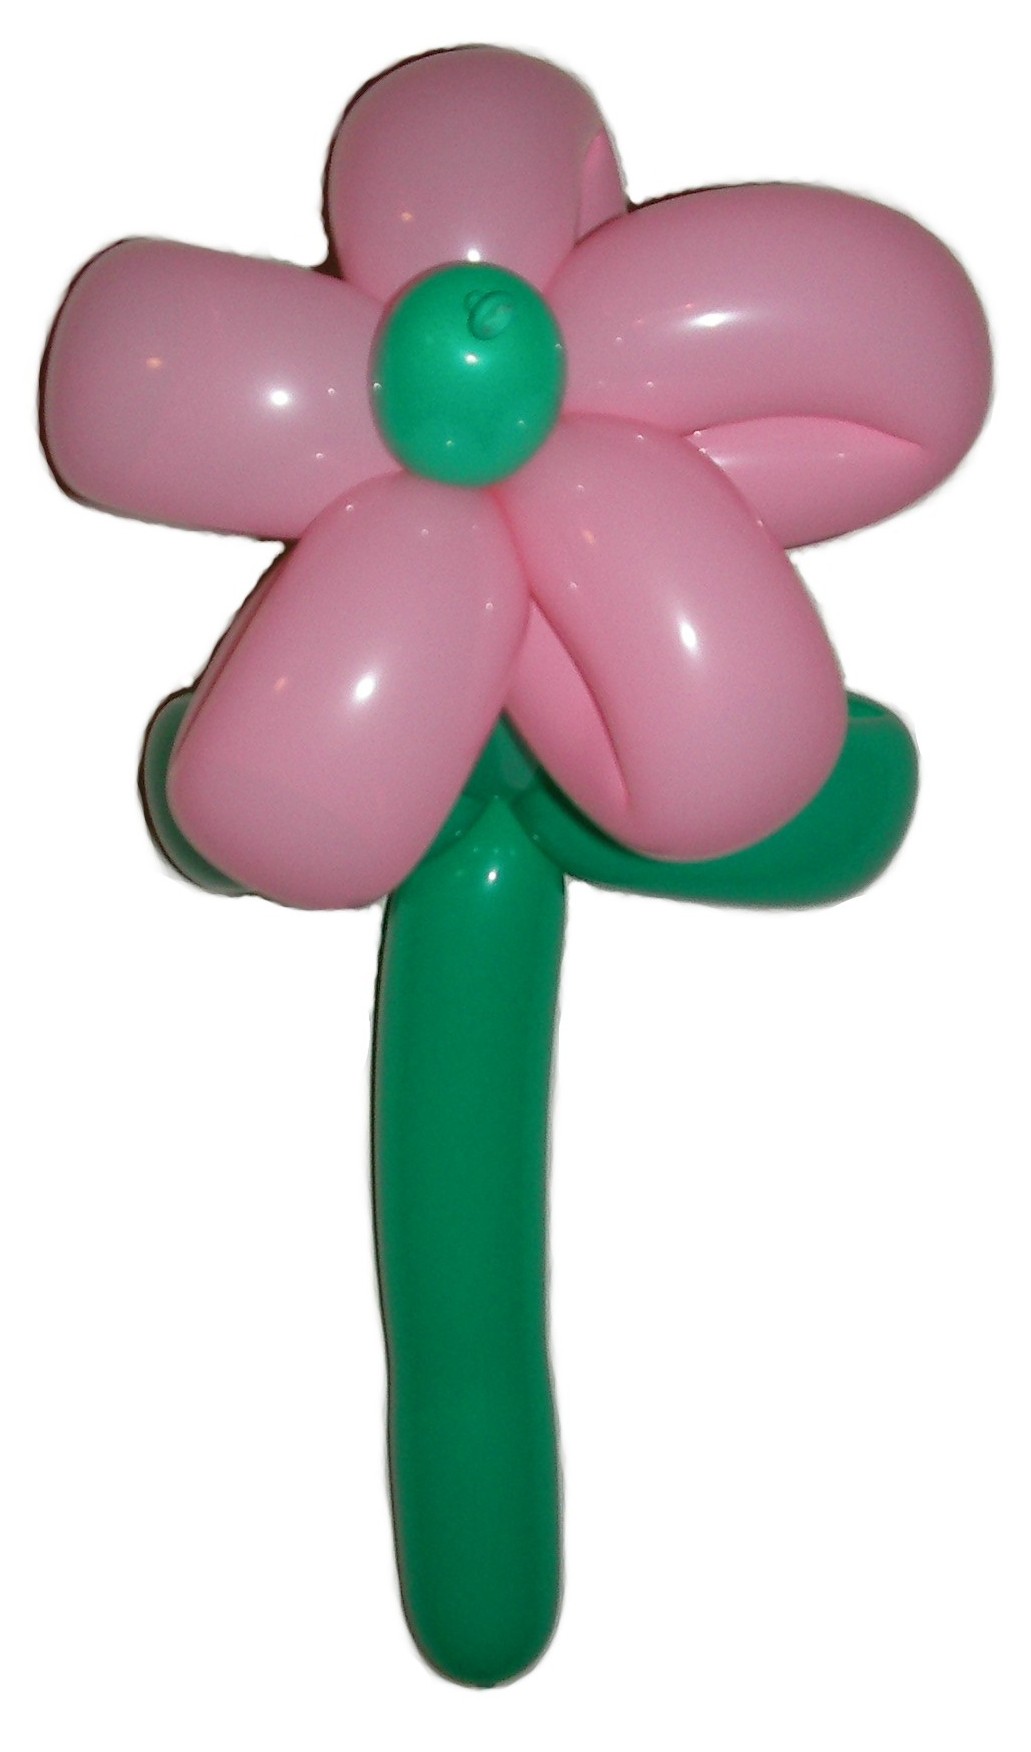 Balloon Animal Flower - Food Ideas